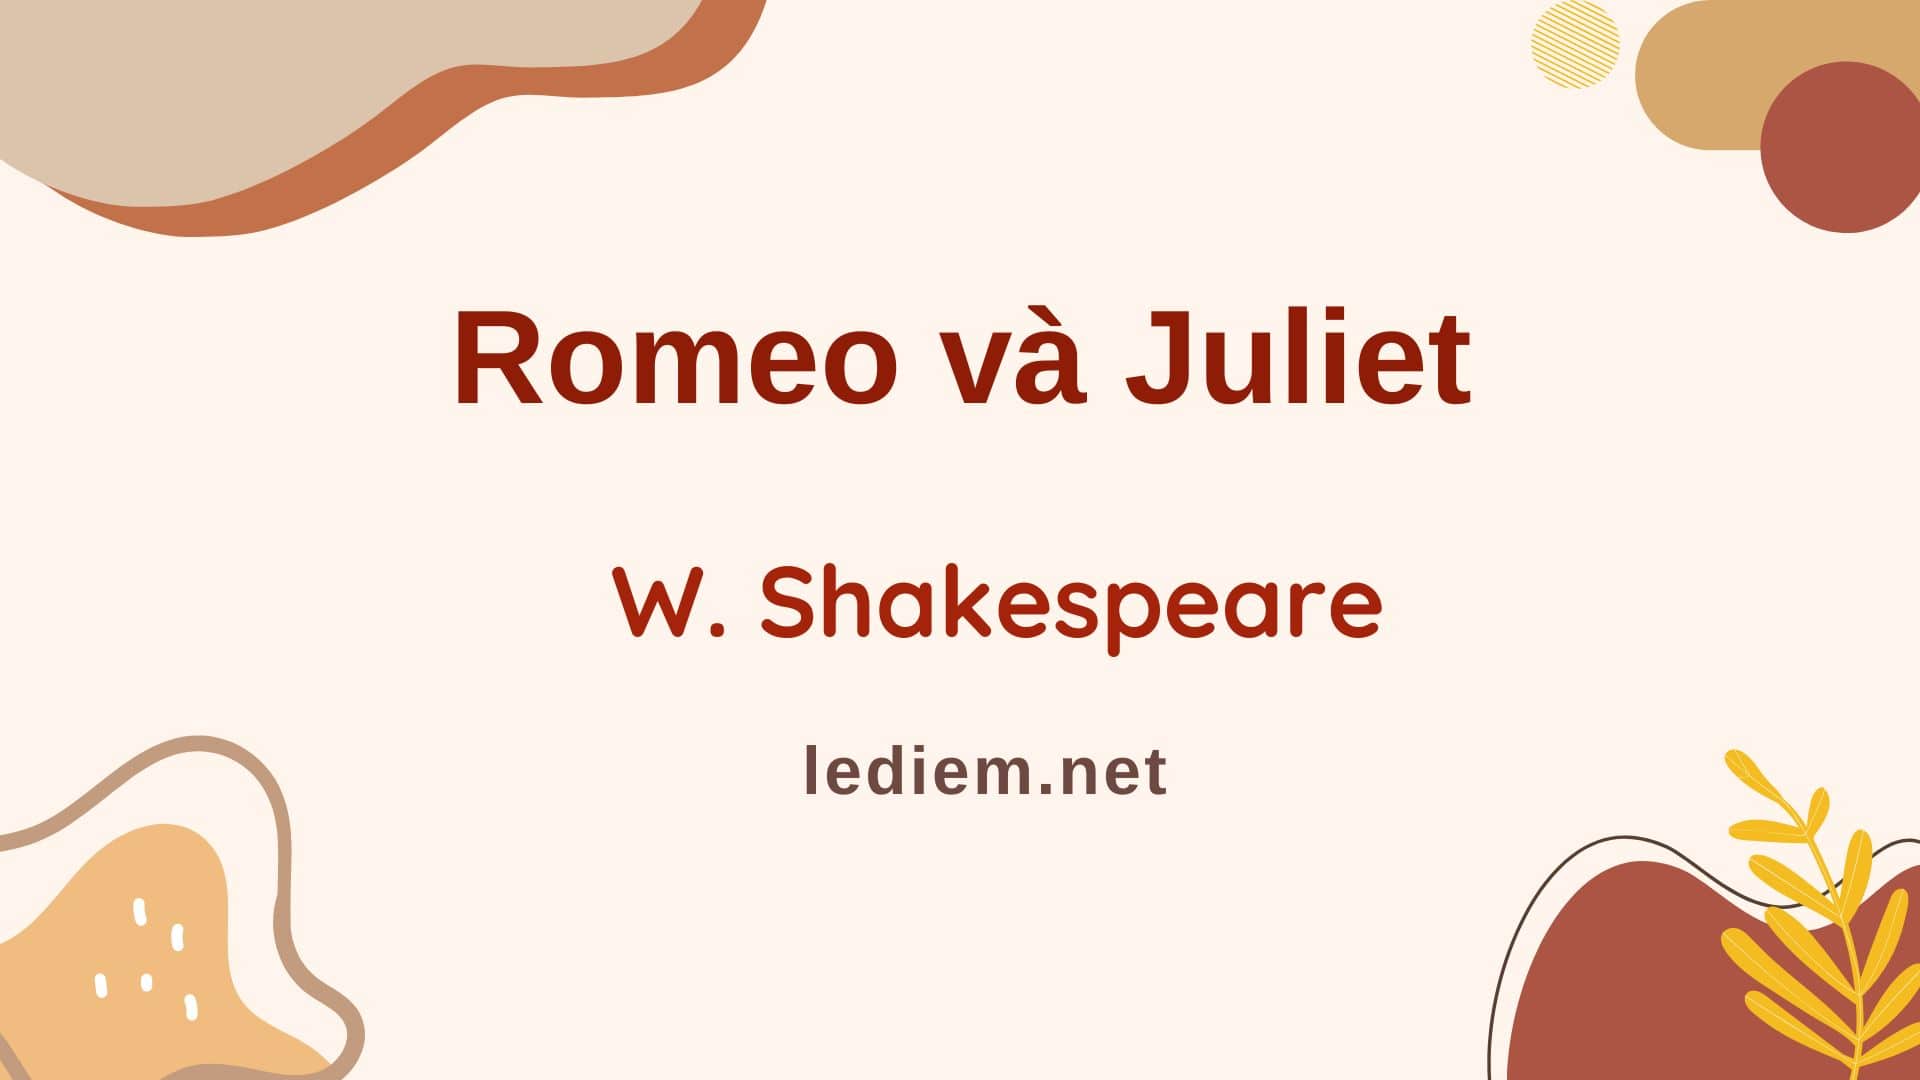 Romeo và juliet (W. Shakespeare); đọc hiểu romeo và juliet ; trắc nghiệm romeo và juliet ; romeo và juliet đọc hiểu ; romeo và juliet trắc nghiệm (10 CÂU HỎI, Đề kiểm tra)